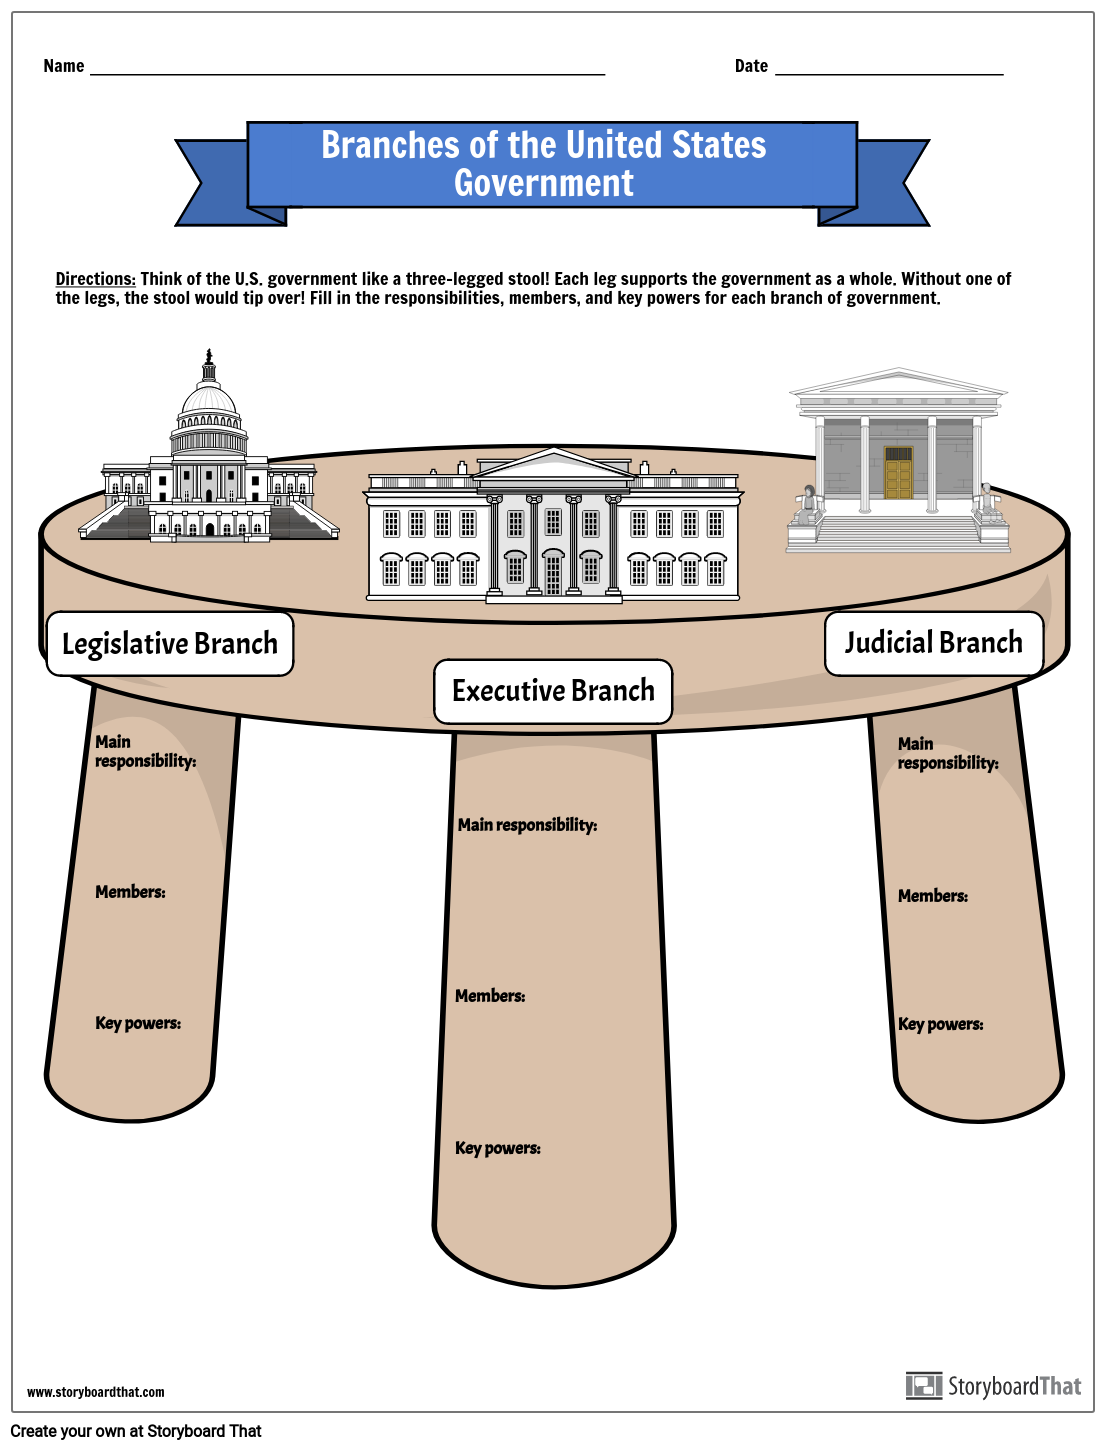 Zweige der Regierung der Vereinigten Staaten With Branches Of Government Worksheet